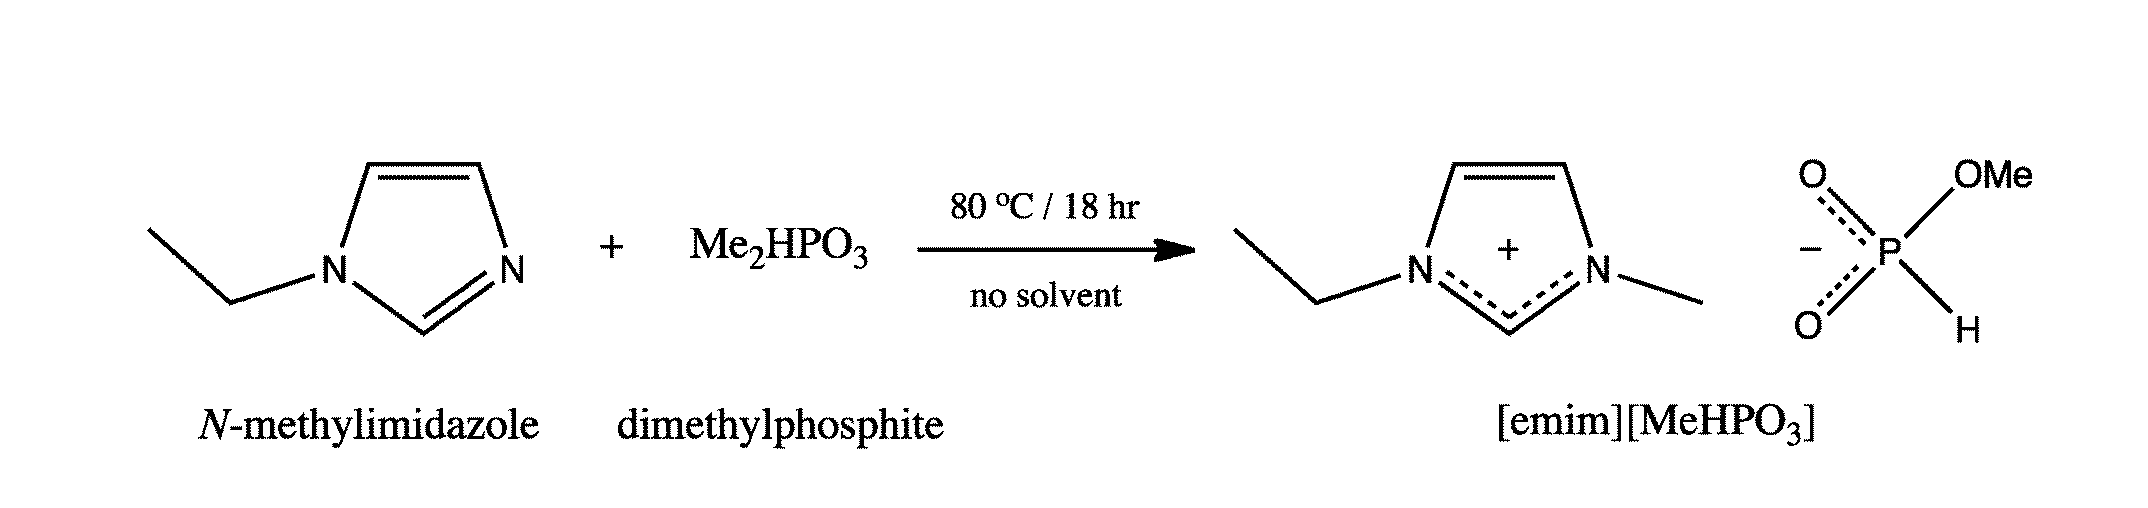 Method of modifying polymers